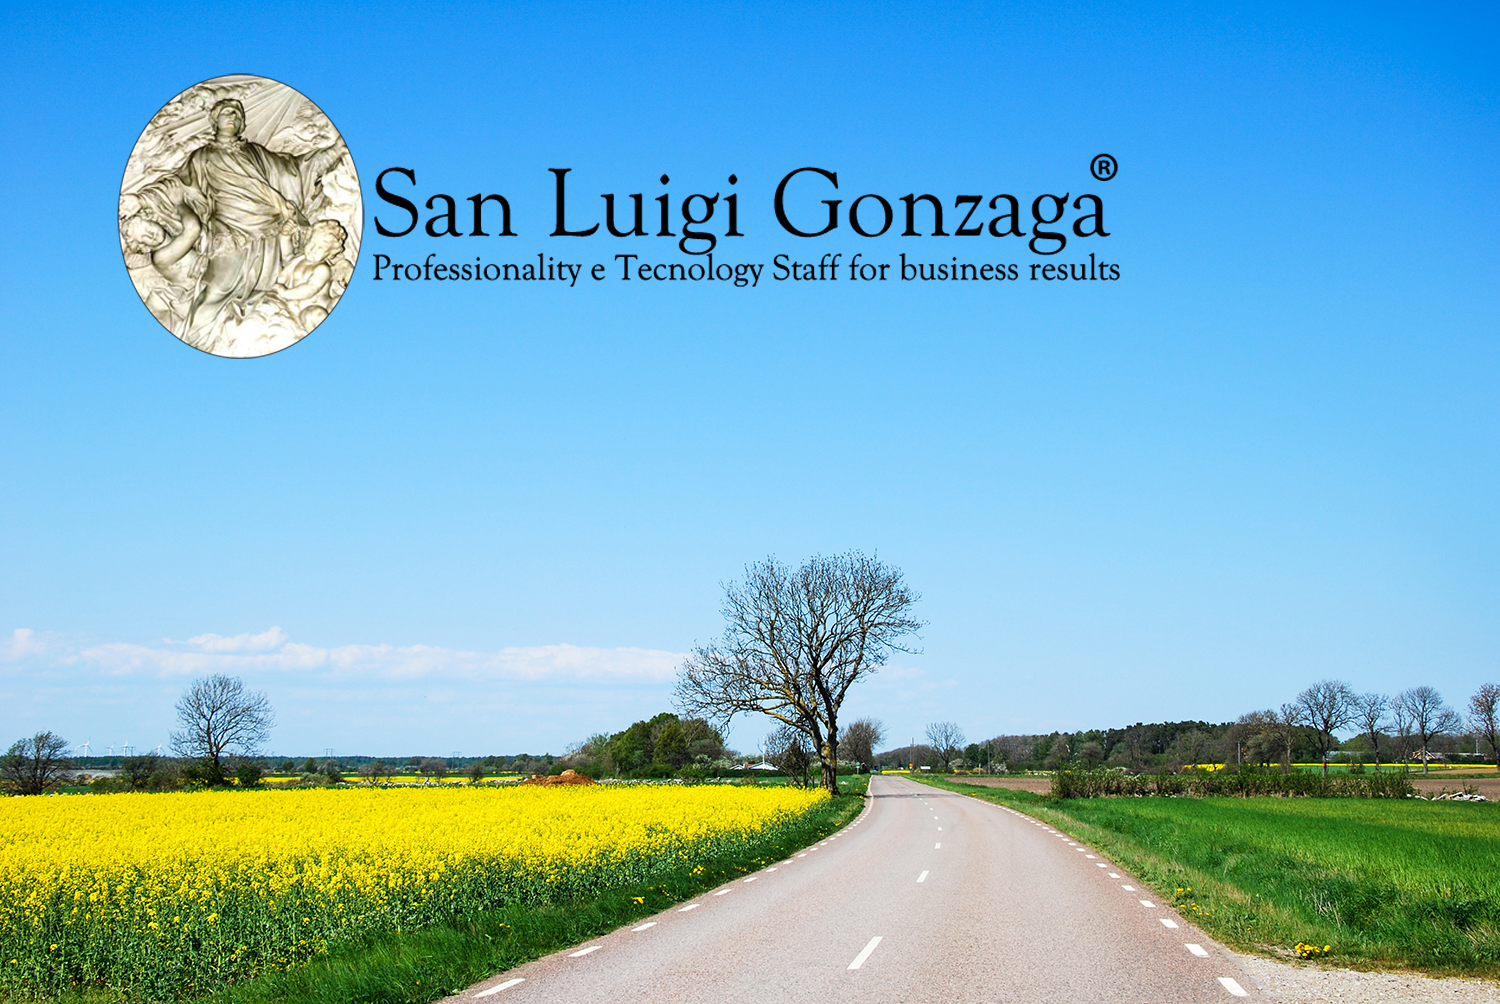 //www.sanluigigonzaga.eu/hyaluprostfast/wp-content/uploads/2021/11/San-Luigi-Gonzaga-Sostenibilita-ambientale.png